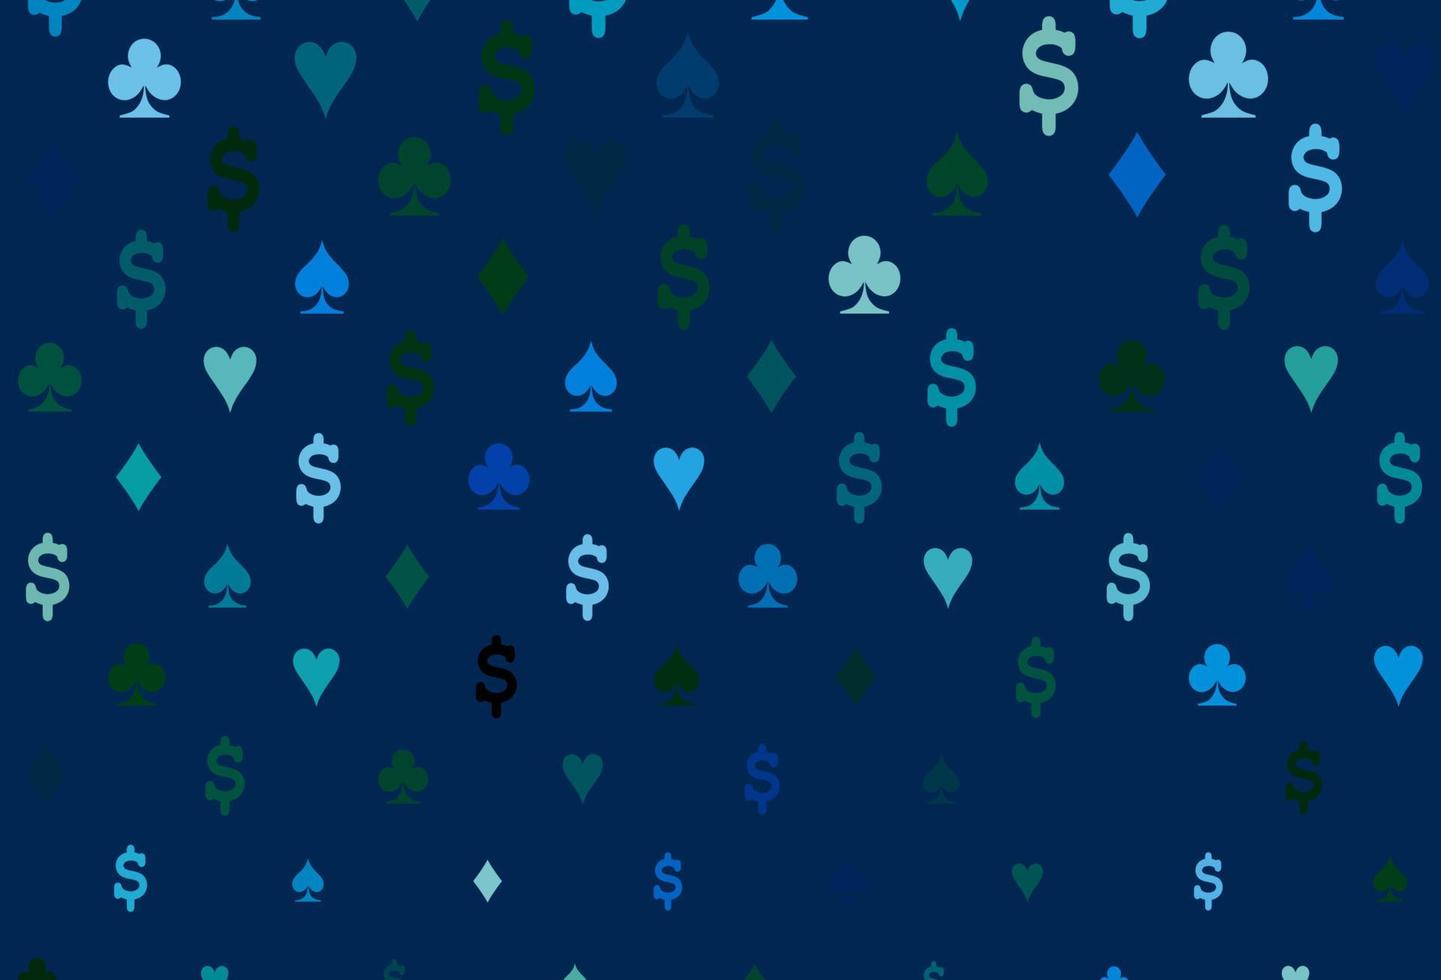 modelo de vetor azul claro, verde com símbolos de pôquer.